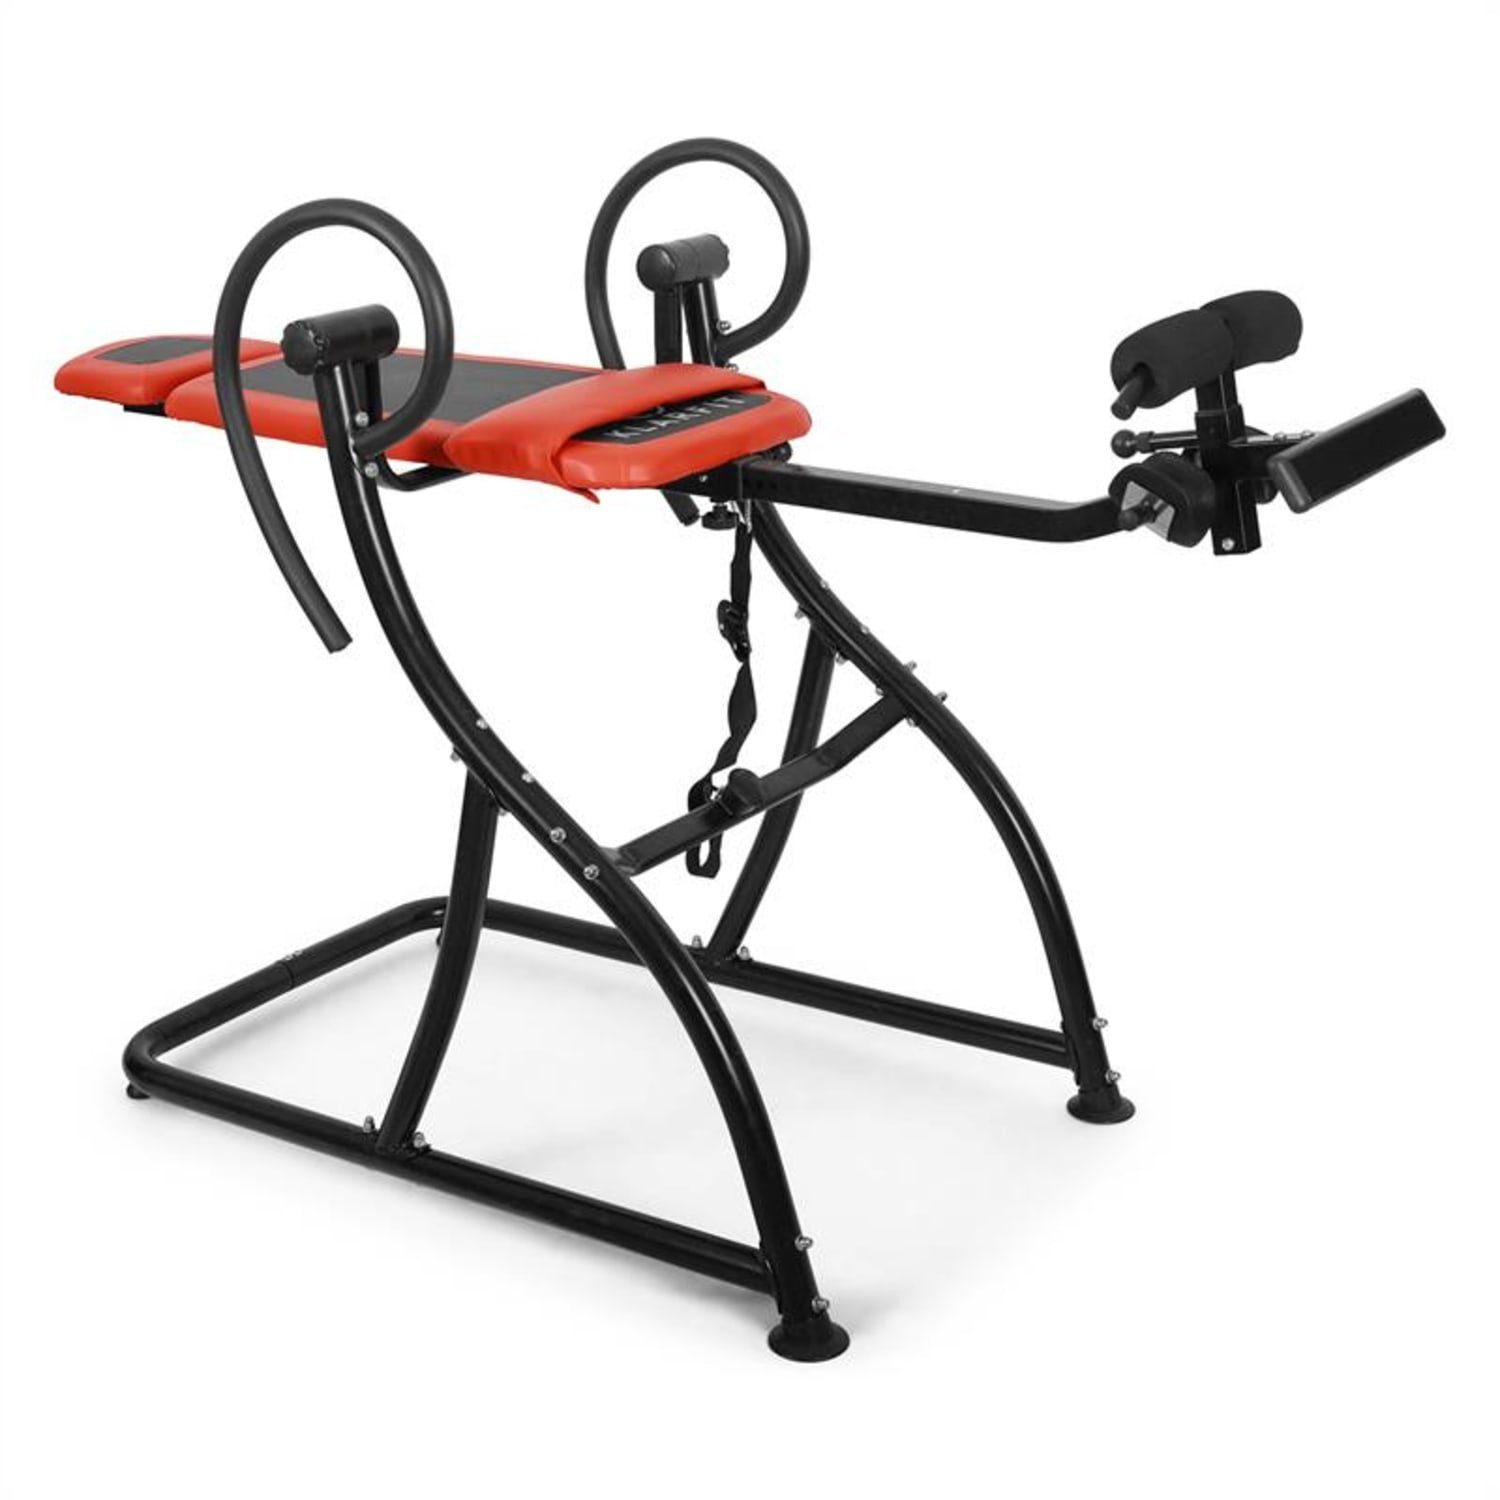 KLARFIT Rückentrainer Relax Zone Comfort Fitness Inversionstrainer Schwerkrafttrainer Inversionsbank, (Set, Gym Rückenkissen), mit